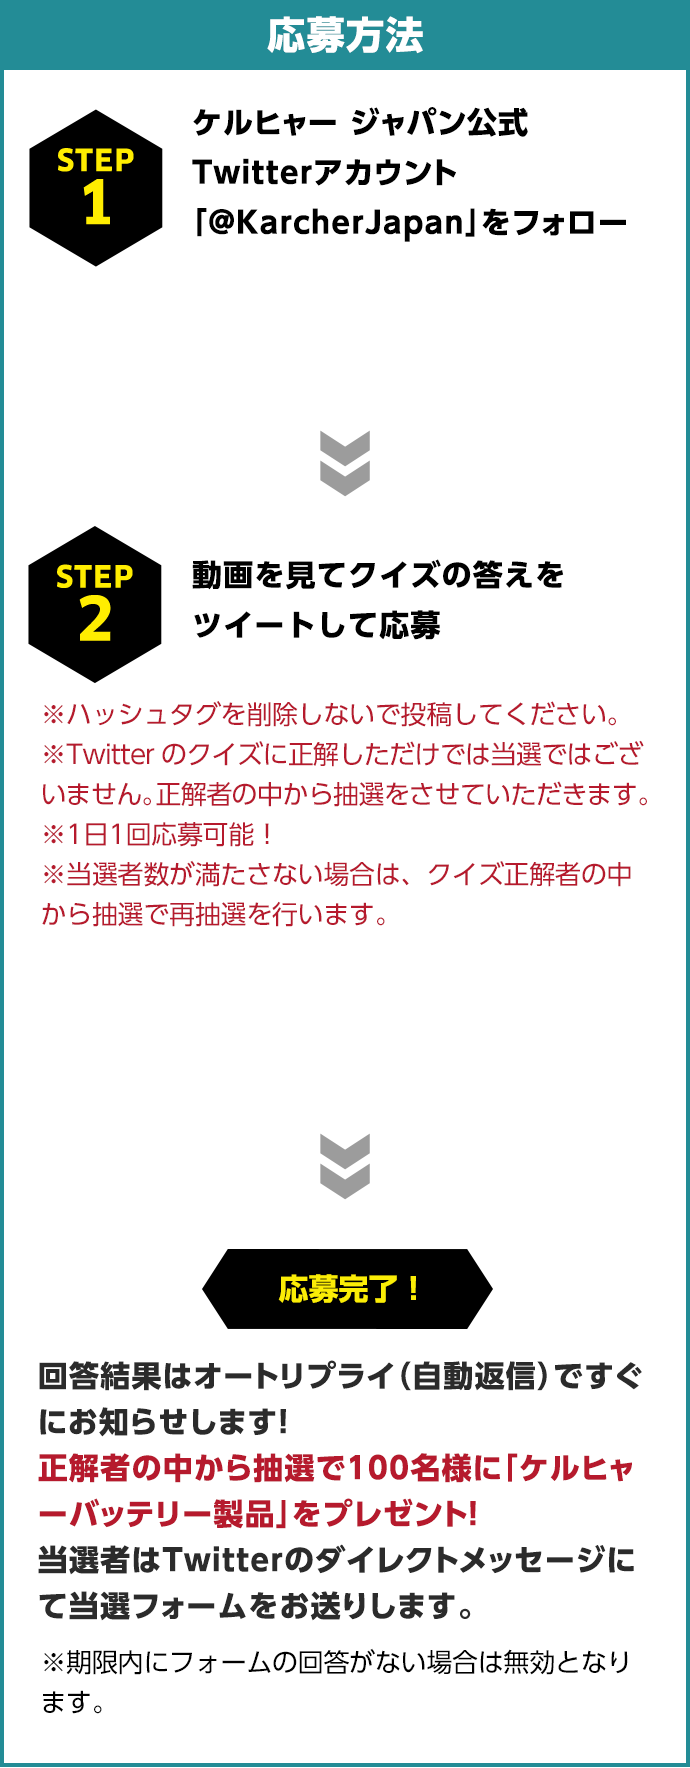 応募方法　1.ケルヒャー ジャパン公式Twitterアカウント「@KarcherJapan」をフォロー　2.動画を見てクイズの答えをツイートして応募